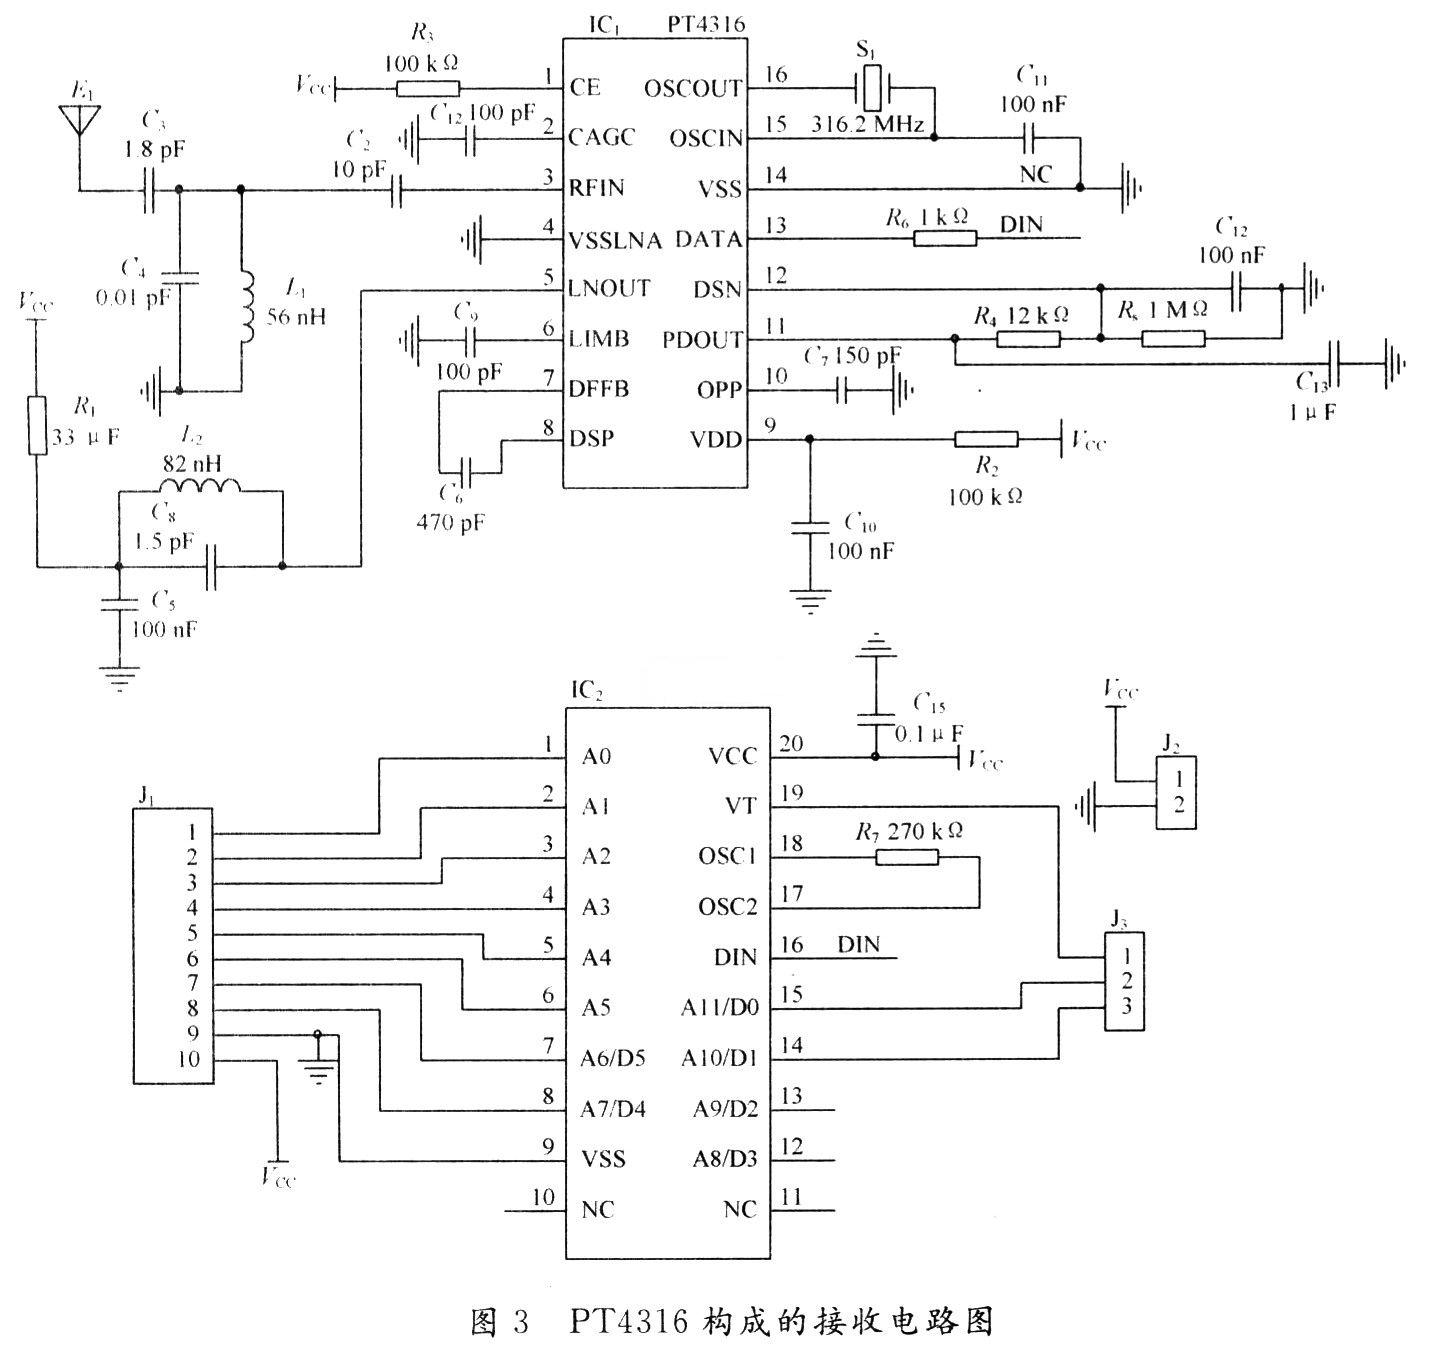 Receiving circuit diagram